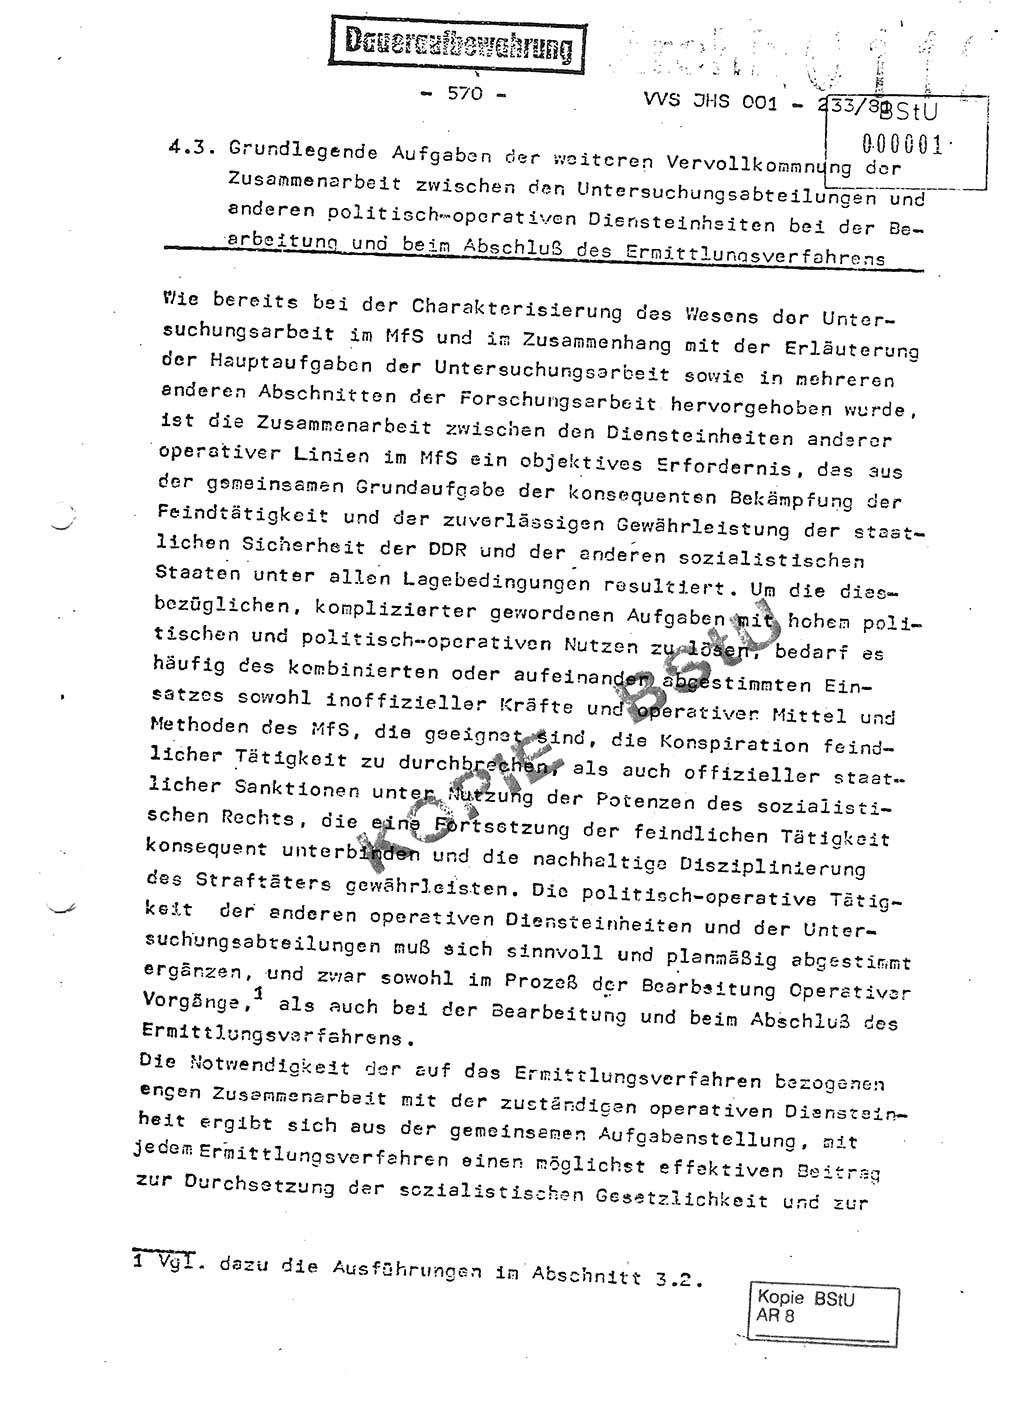 Dissertation Oberstleutnant Horst Zank (JHS), Oberstleutnant Dr. Karl-Heinz Knoblauch (JHS), Oberstleutnant Gustav-Adolf Kowalewski (HA Ⅸ), Oberstleutnant Wolfgang Plötner (HA Ⅸ), Ministerium für Staatssicherheit (MfS) [Deutsche Demokratische Republik (DDR)], Juristische Hochschule (JHS), Vertrauliche Verschlußsache (VVS) o001-233/81, Potsdam 1981, Blatt 570 (Diss. MfS DDR JHS VVS o001-233/81 1981, Bl. 570)